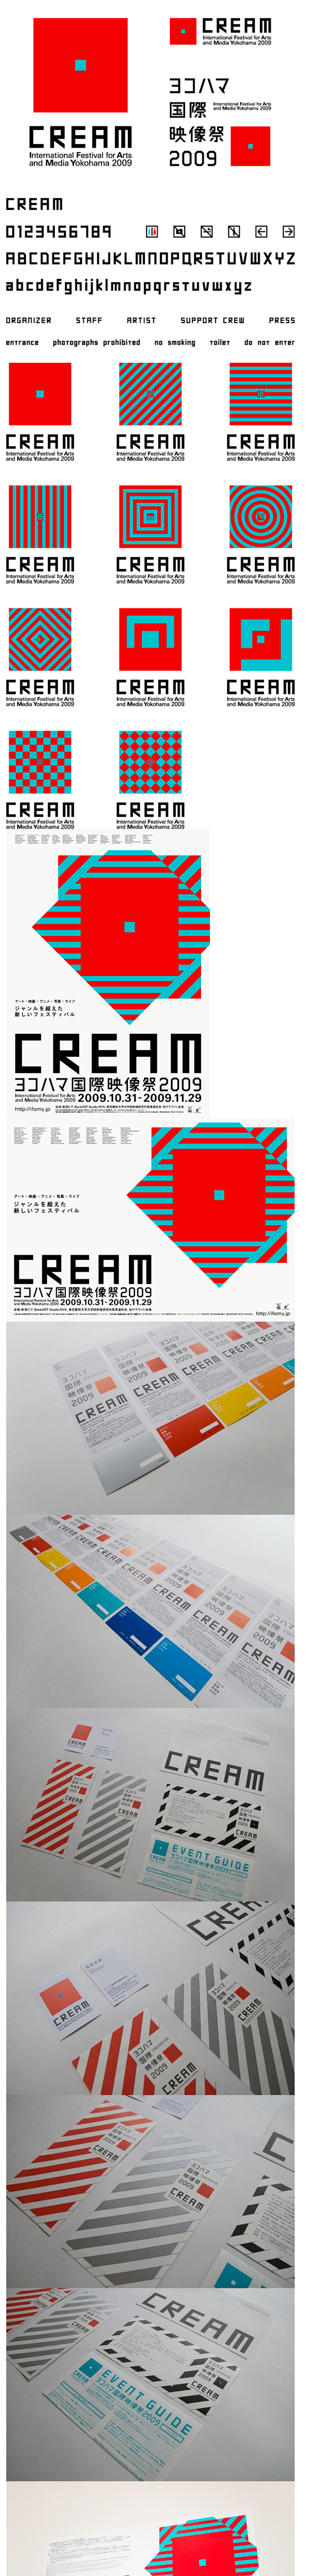 2009横滨国际影像艺术节形象及相关设计...